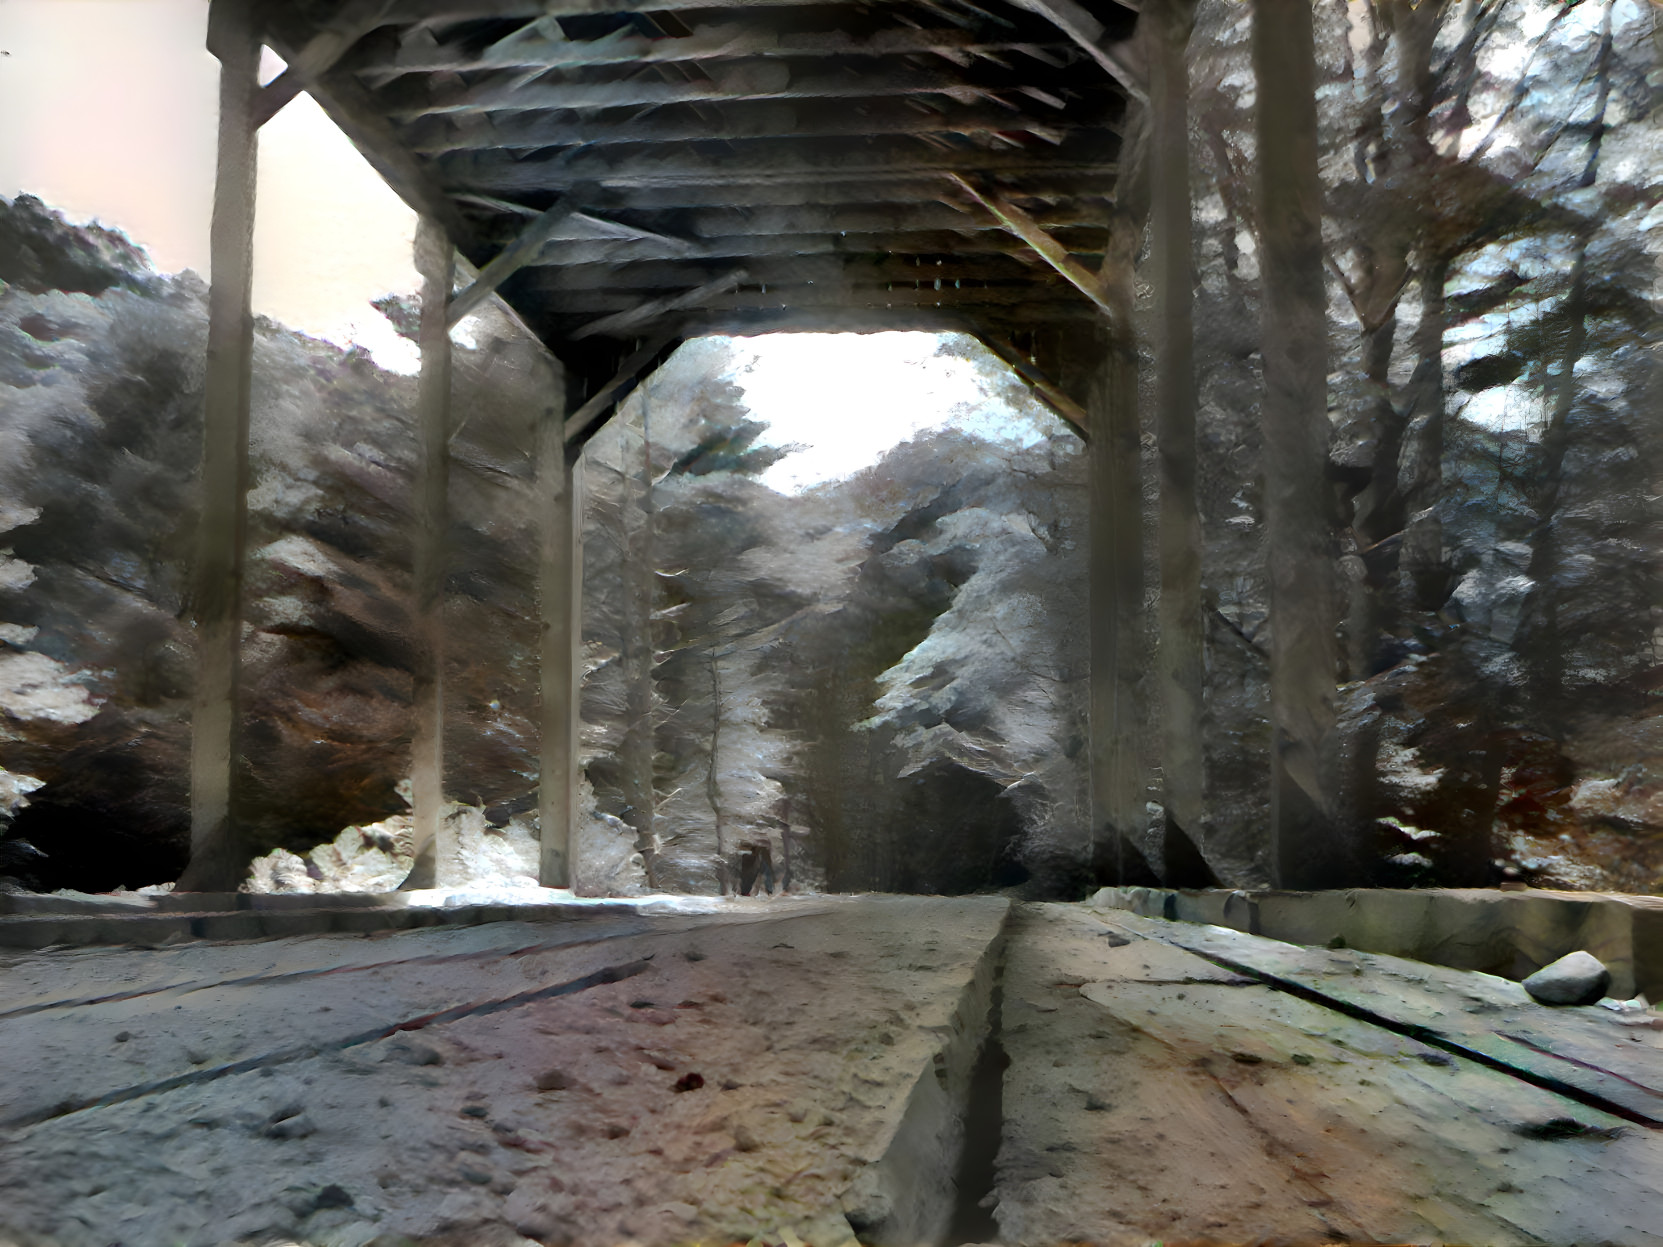 Vermont Covered Bridge